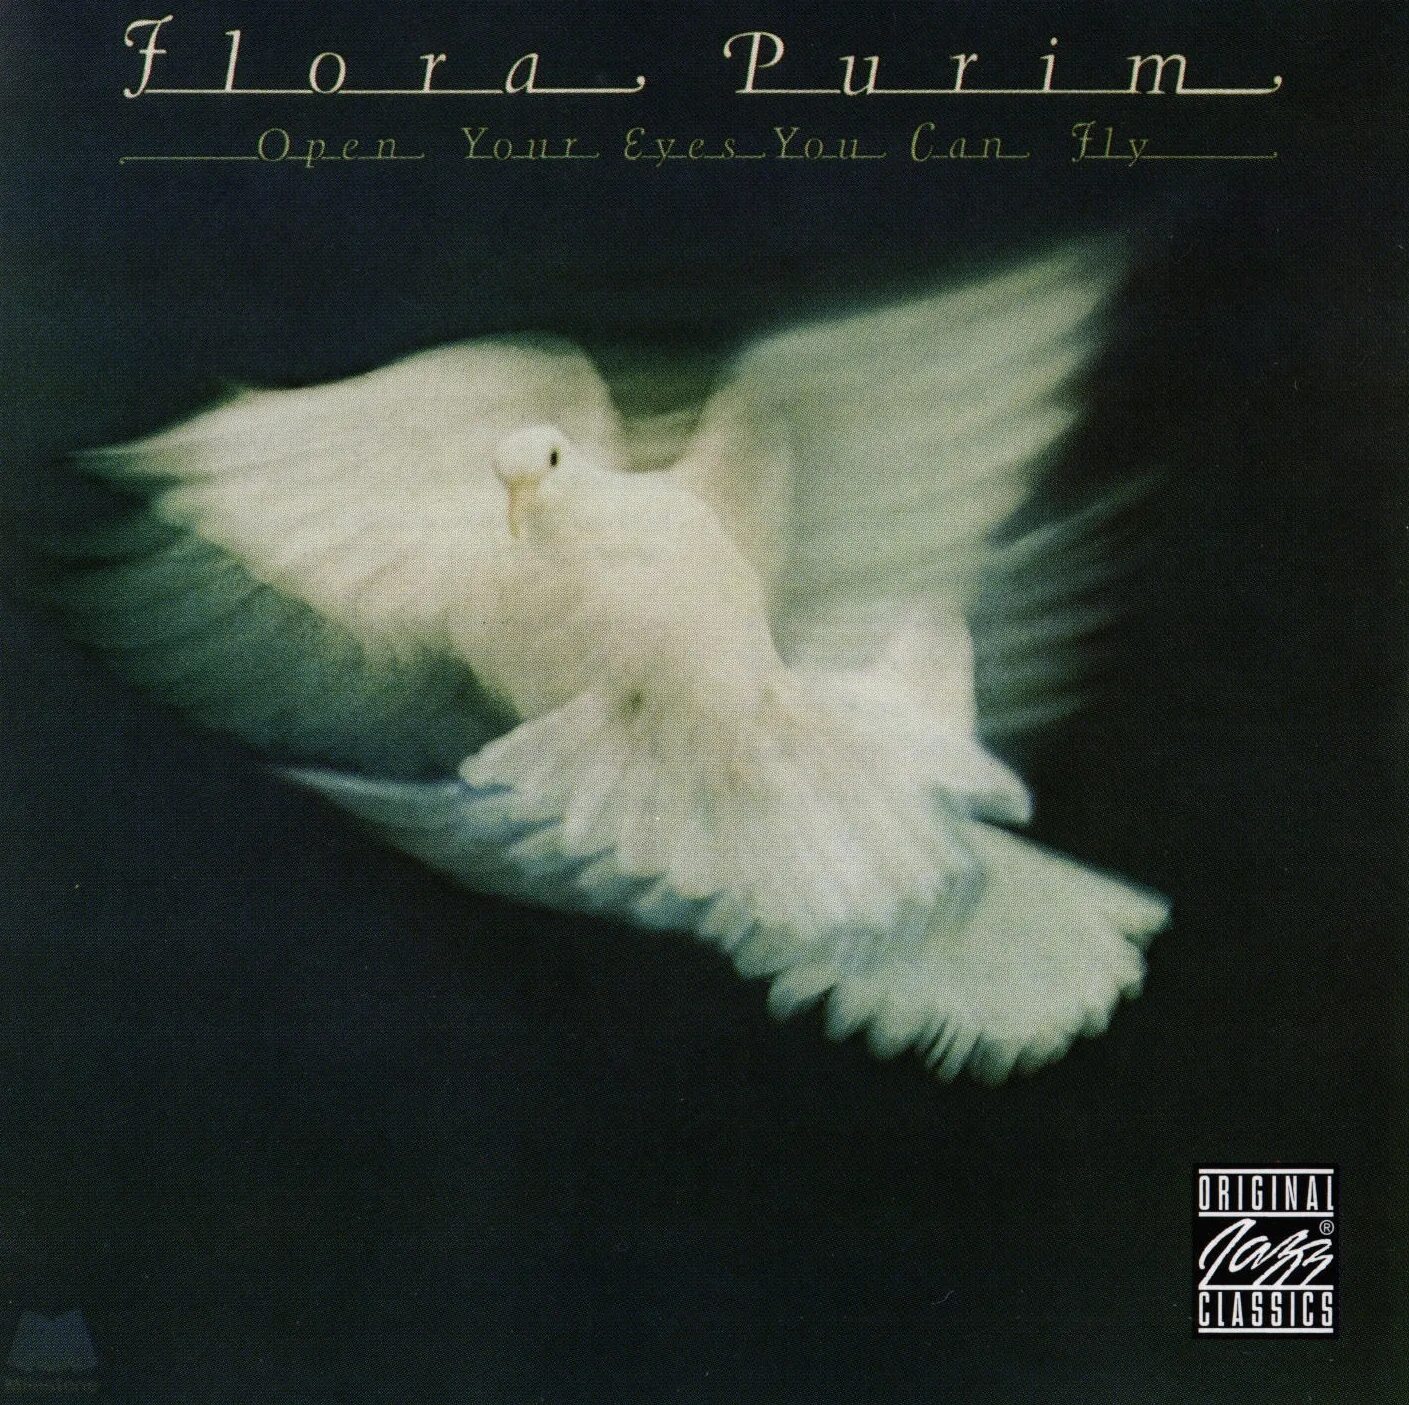 Слушать песню открой. Flora Purim - open your Eyes you can Fly (1976). 1976 Encounter (Flora Purim album). Flora Purim. Flora Purim - Butterfly Dreams - 1973.